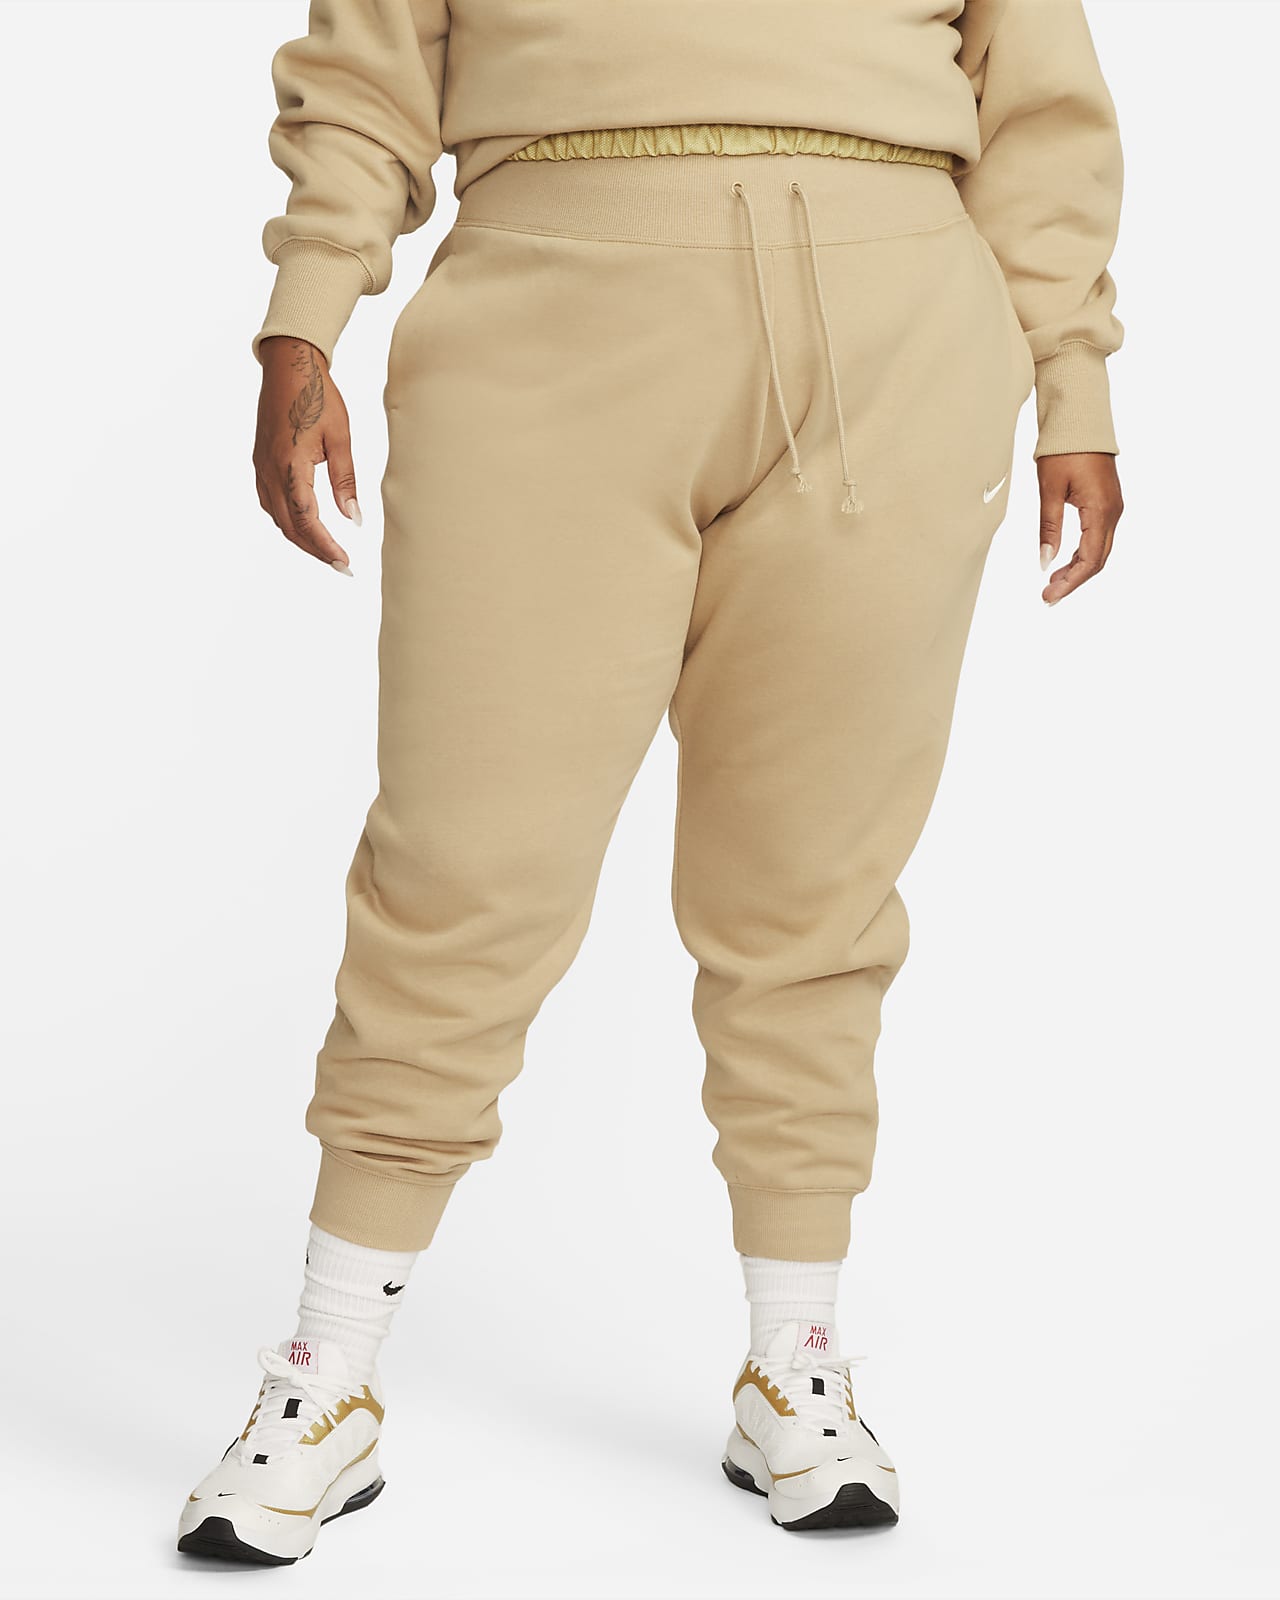 Γυναικείο ψηλόμεσο παντελόνι φόρμας Nike Sportswear Phoenix Fleece (μεγάλα μεγέθη)